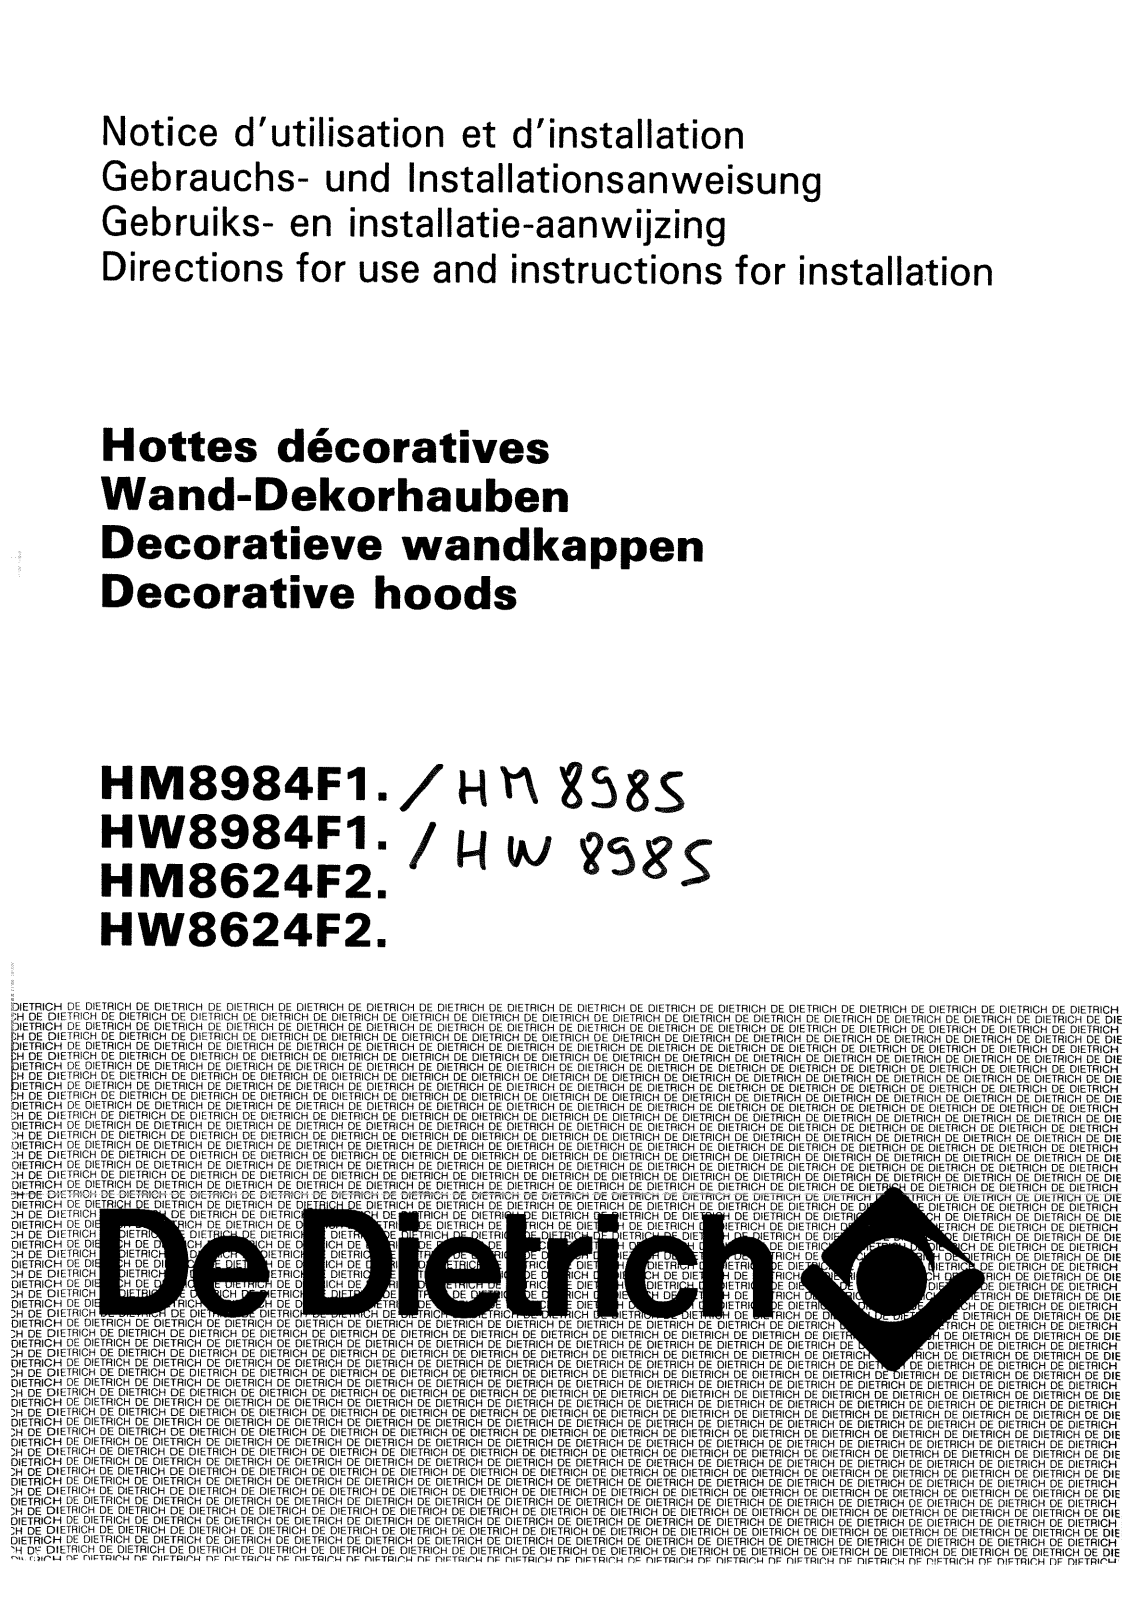 De dietrich HN8625E1, HW8984F2, HM8624F2, HW8985E1, HW8624F2 User Manual